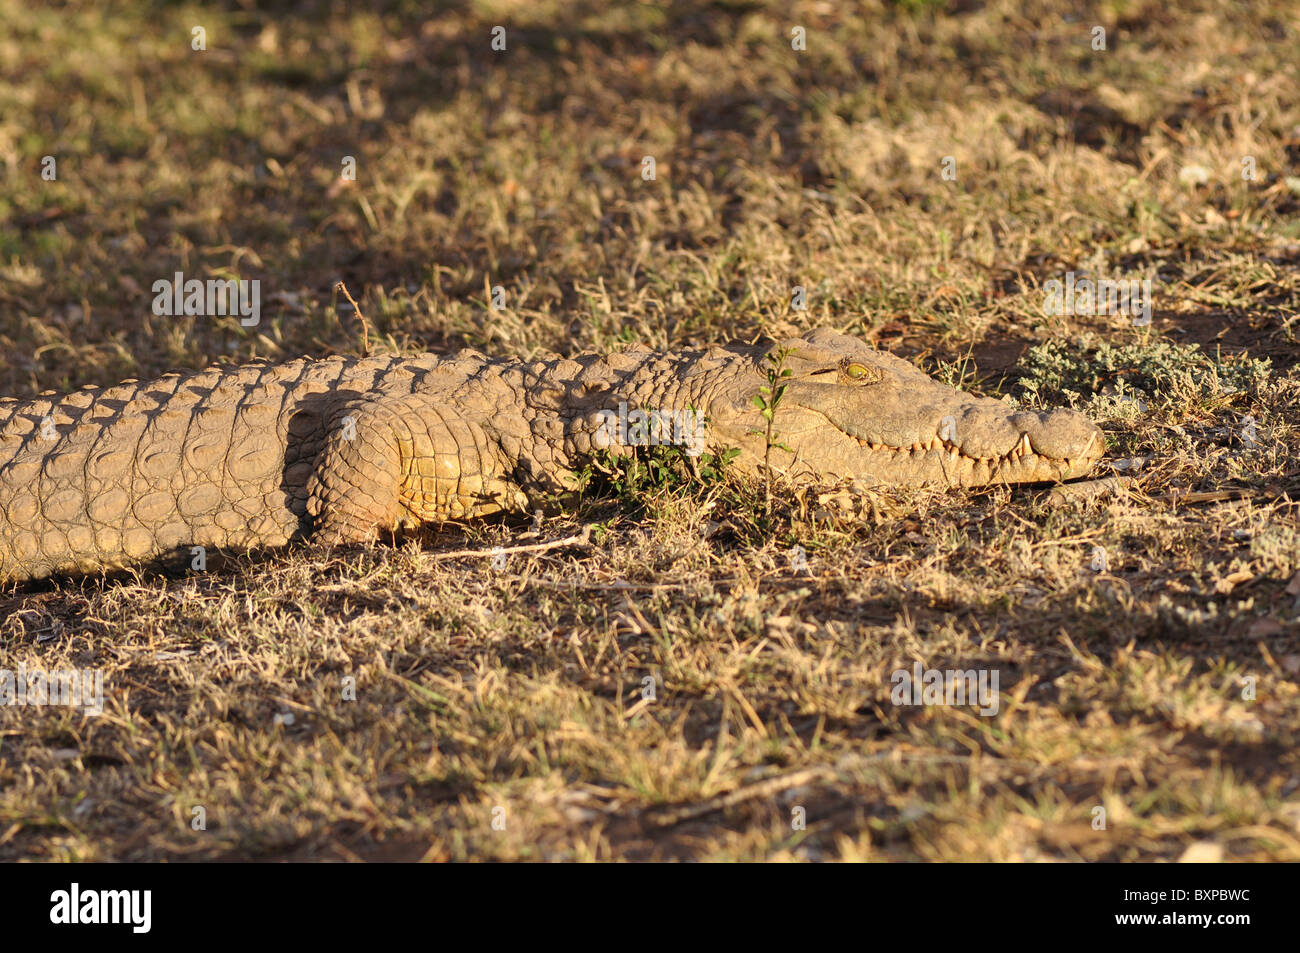 Bien alimentados, pero aún así, un miedo al cocodrilo Schotia Private Game Reserve, Sudáfrica Foto de stock